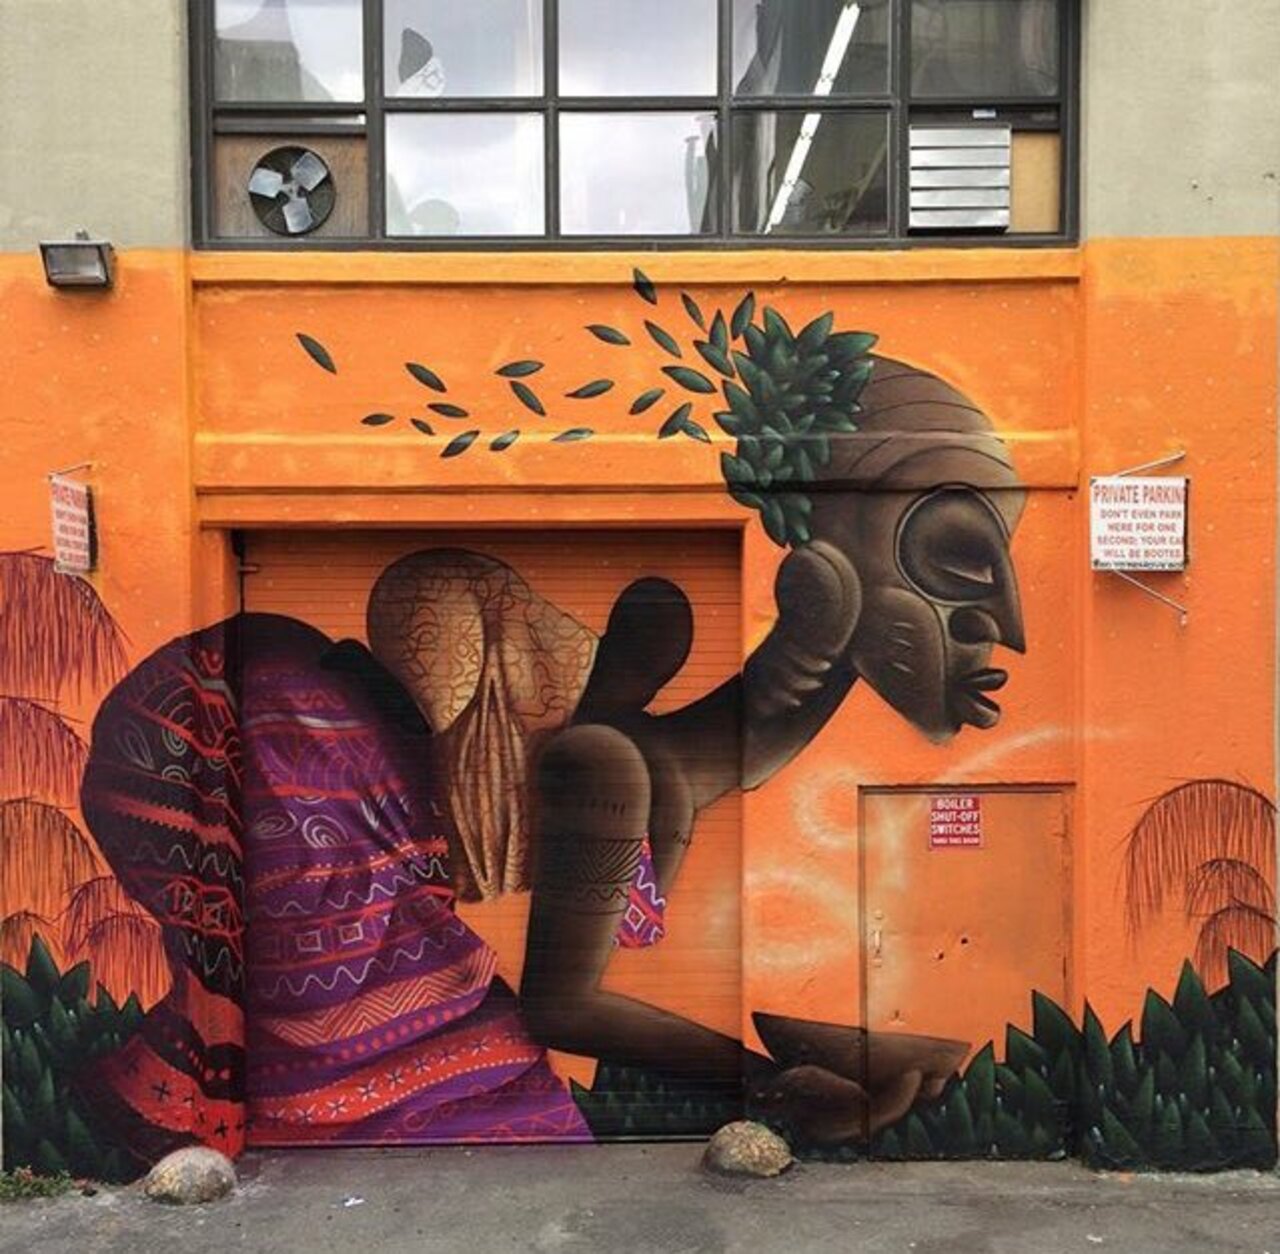 RT @CI040YACHT: New Street Art by Alexandre Keto in NYC 

#art #graffiti #mural #streetart https://t.co/FJ5Z5Wyrls